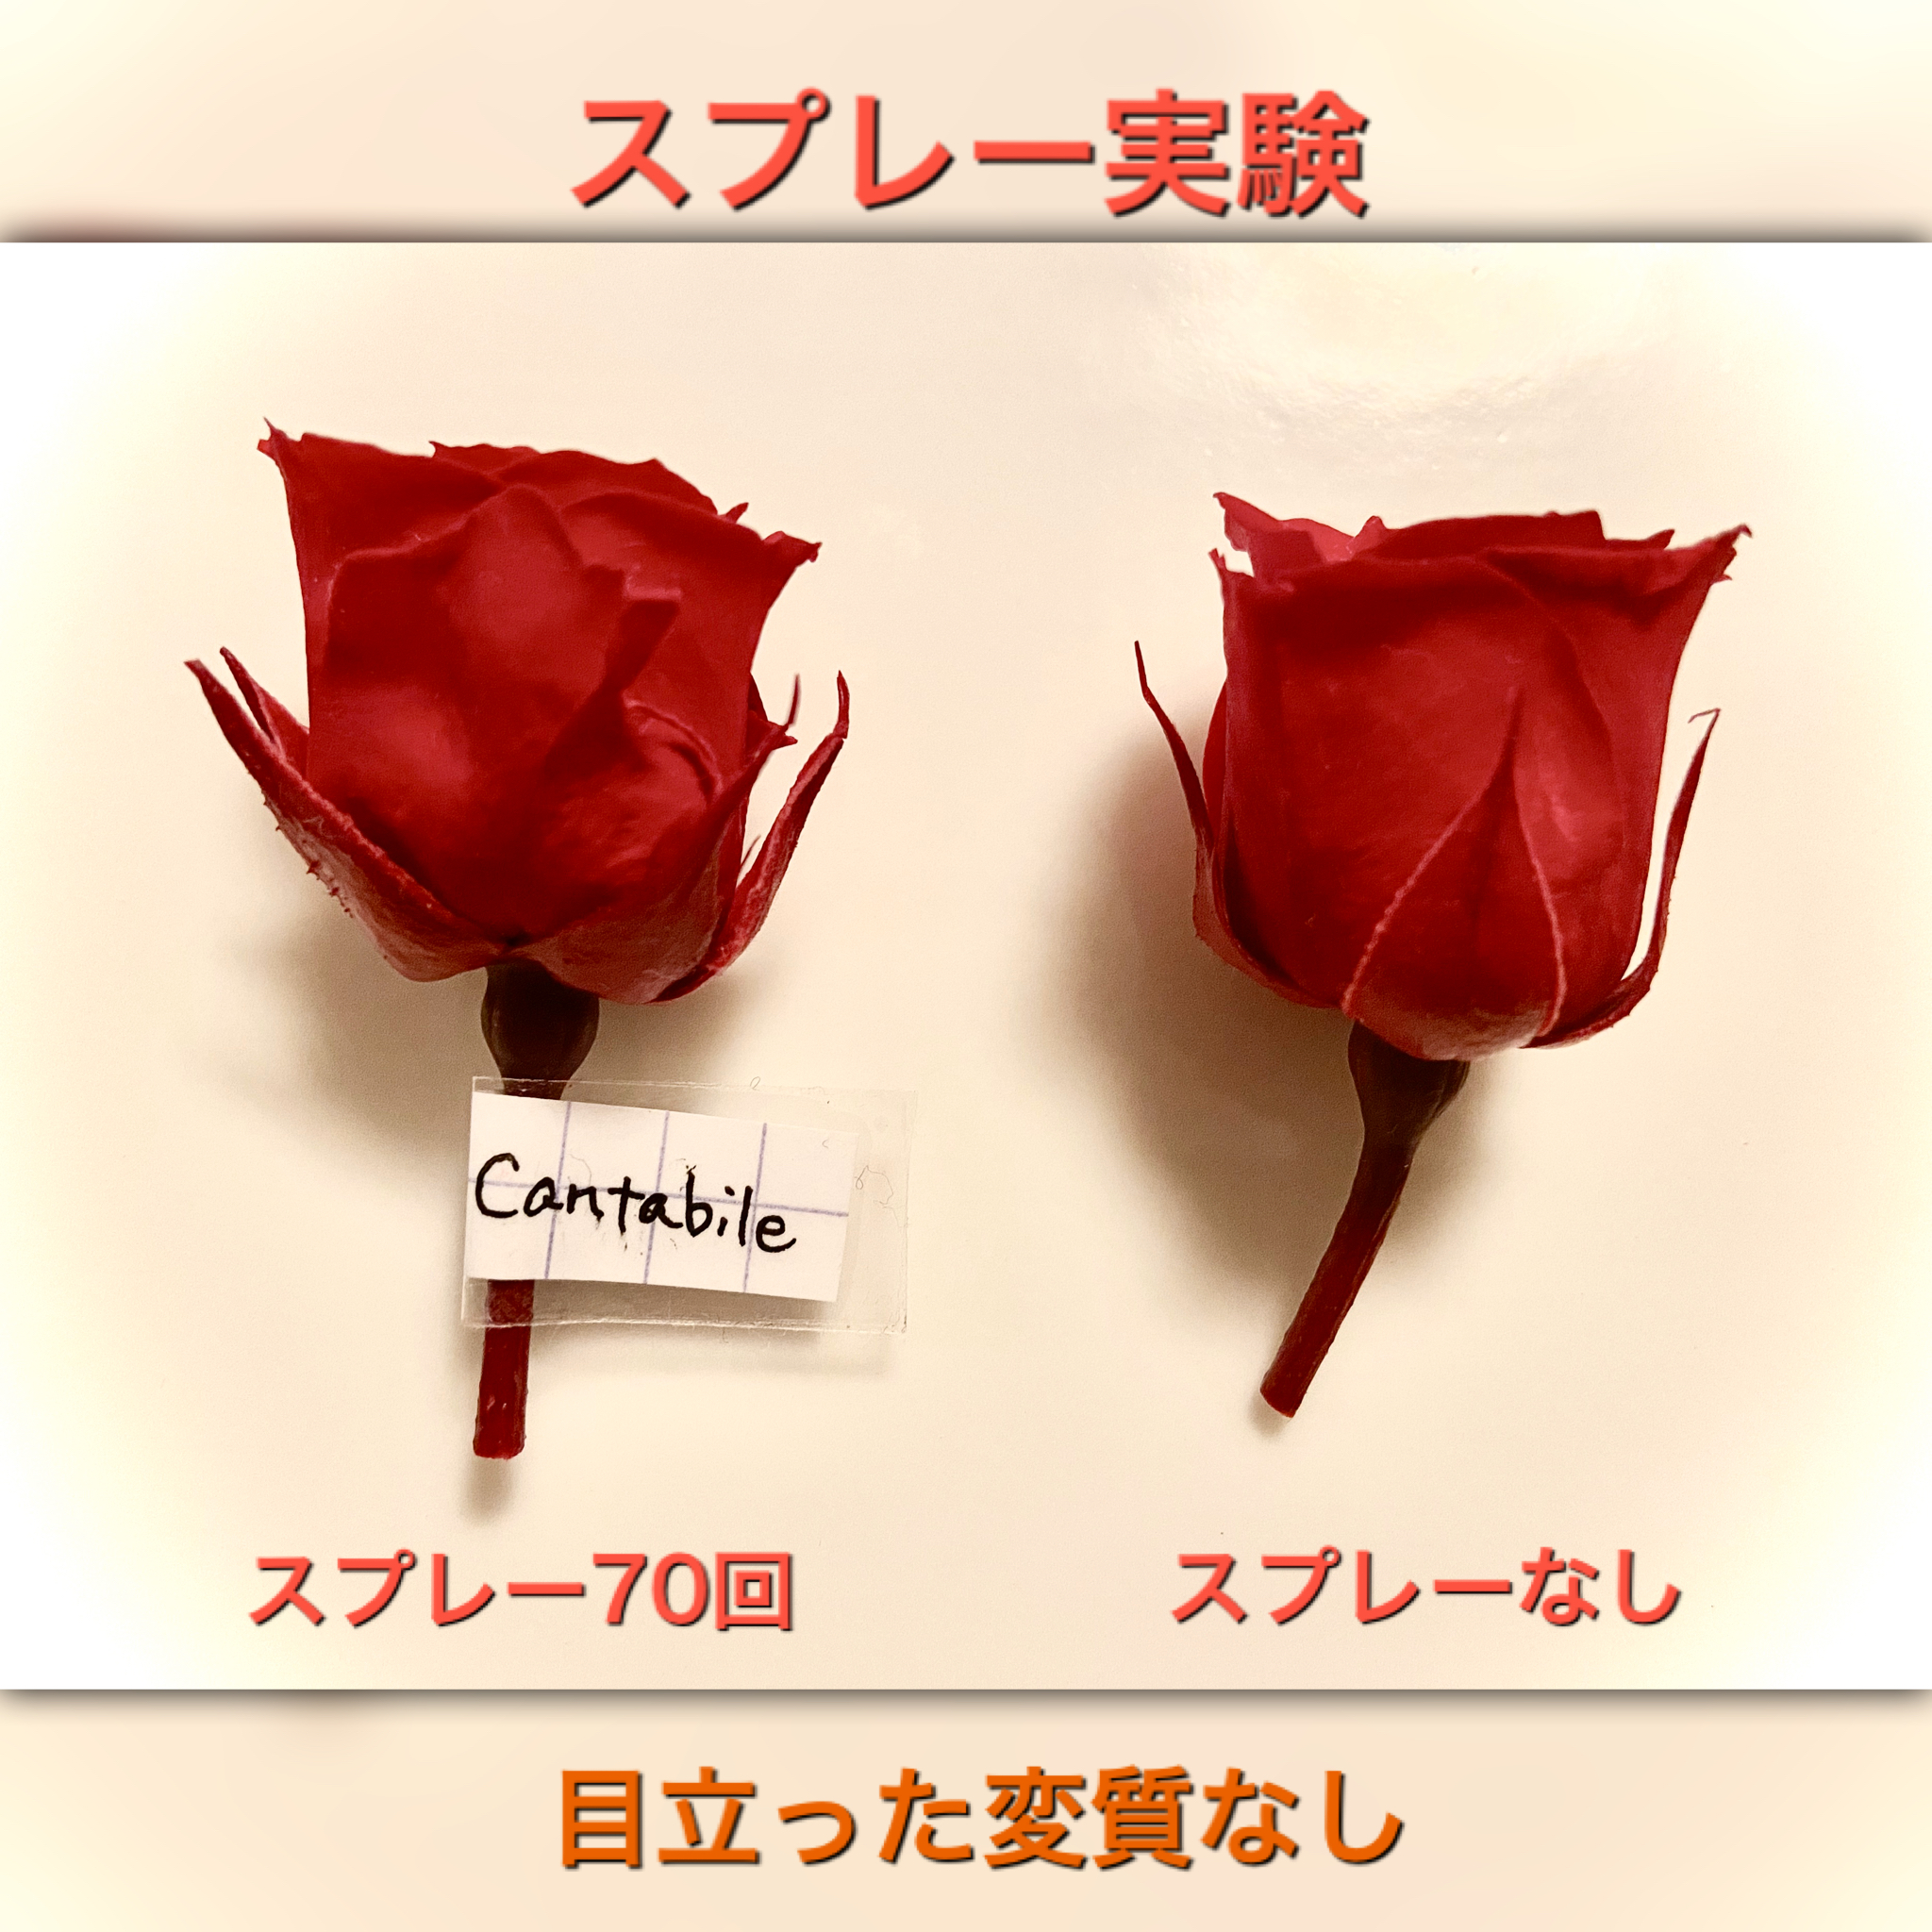 Cantabile プリザーブドフラワーのためのアロマスプレー Iichi ハンドメイド クラフト作品 手仕事品の通販